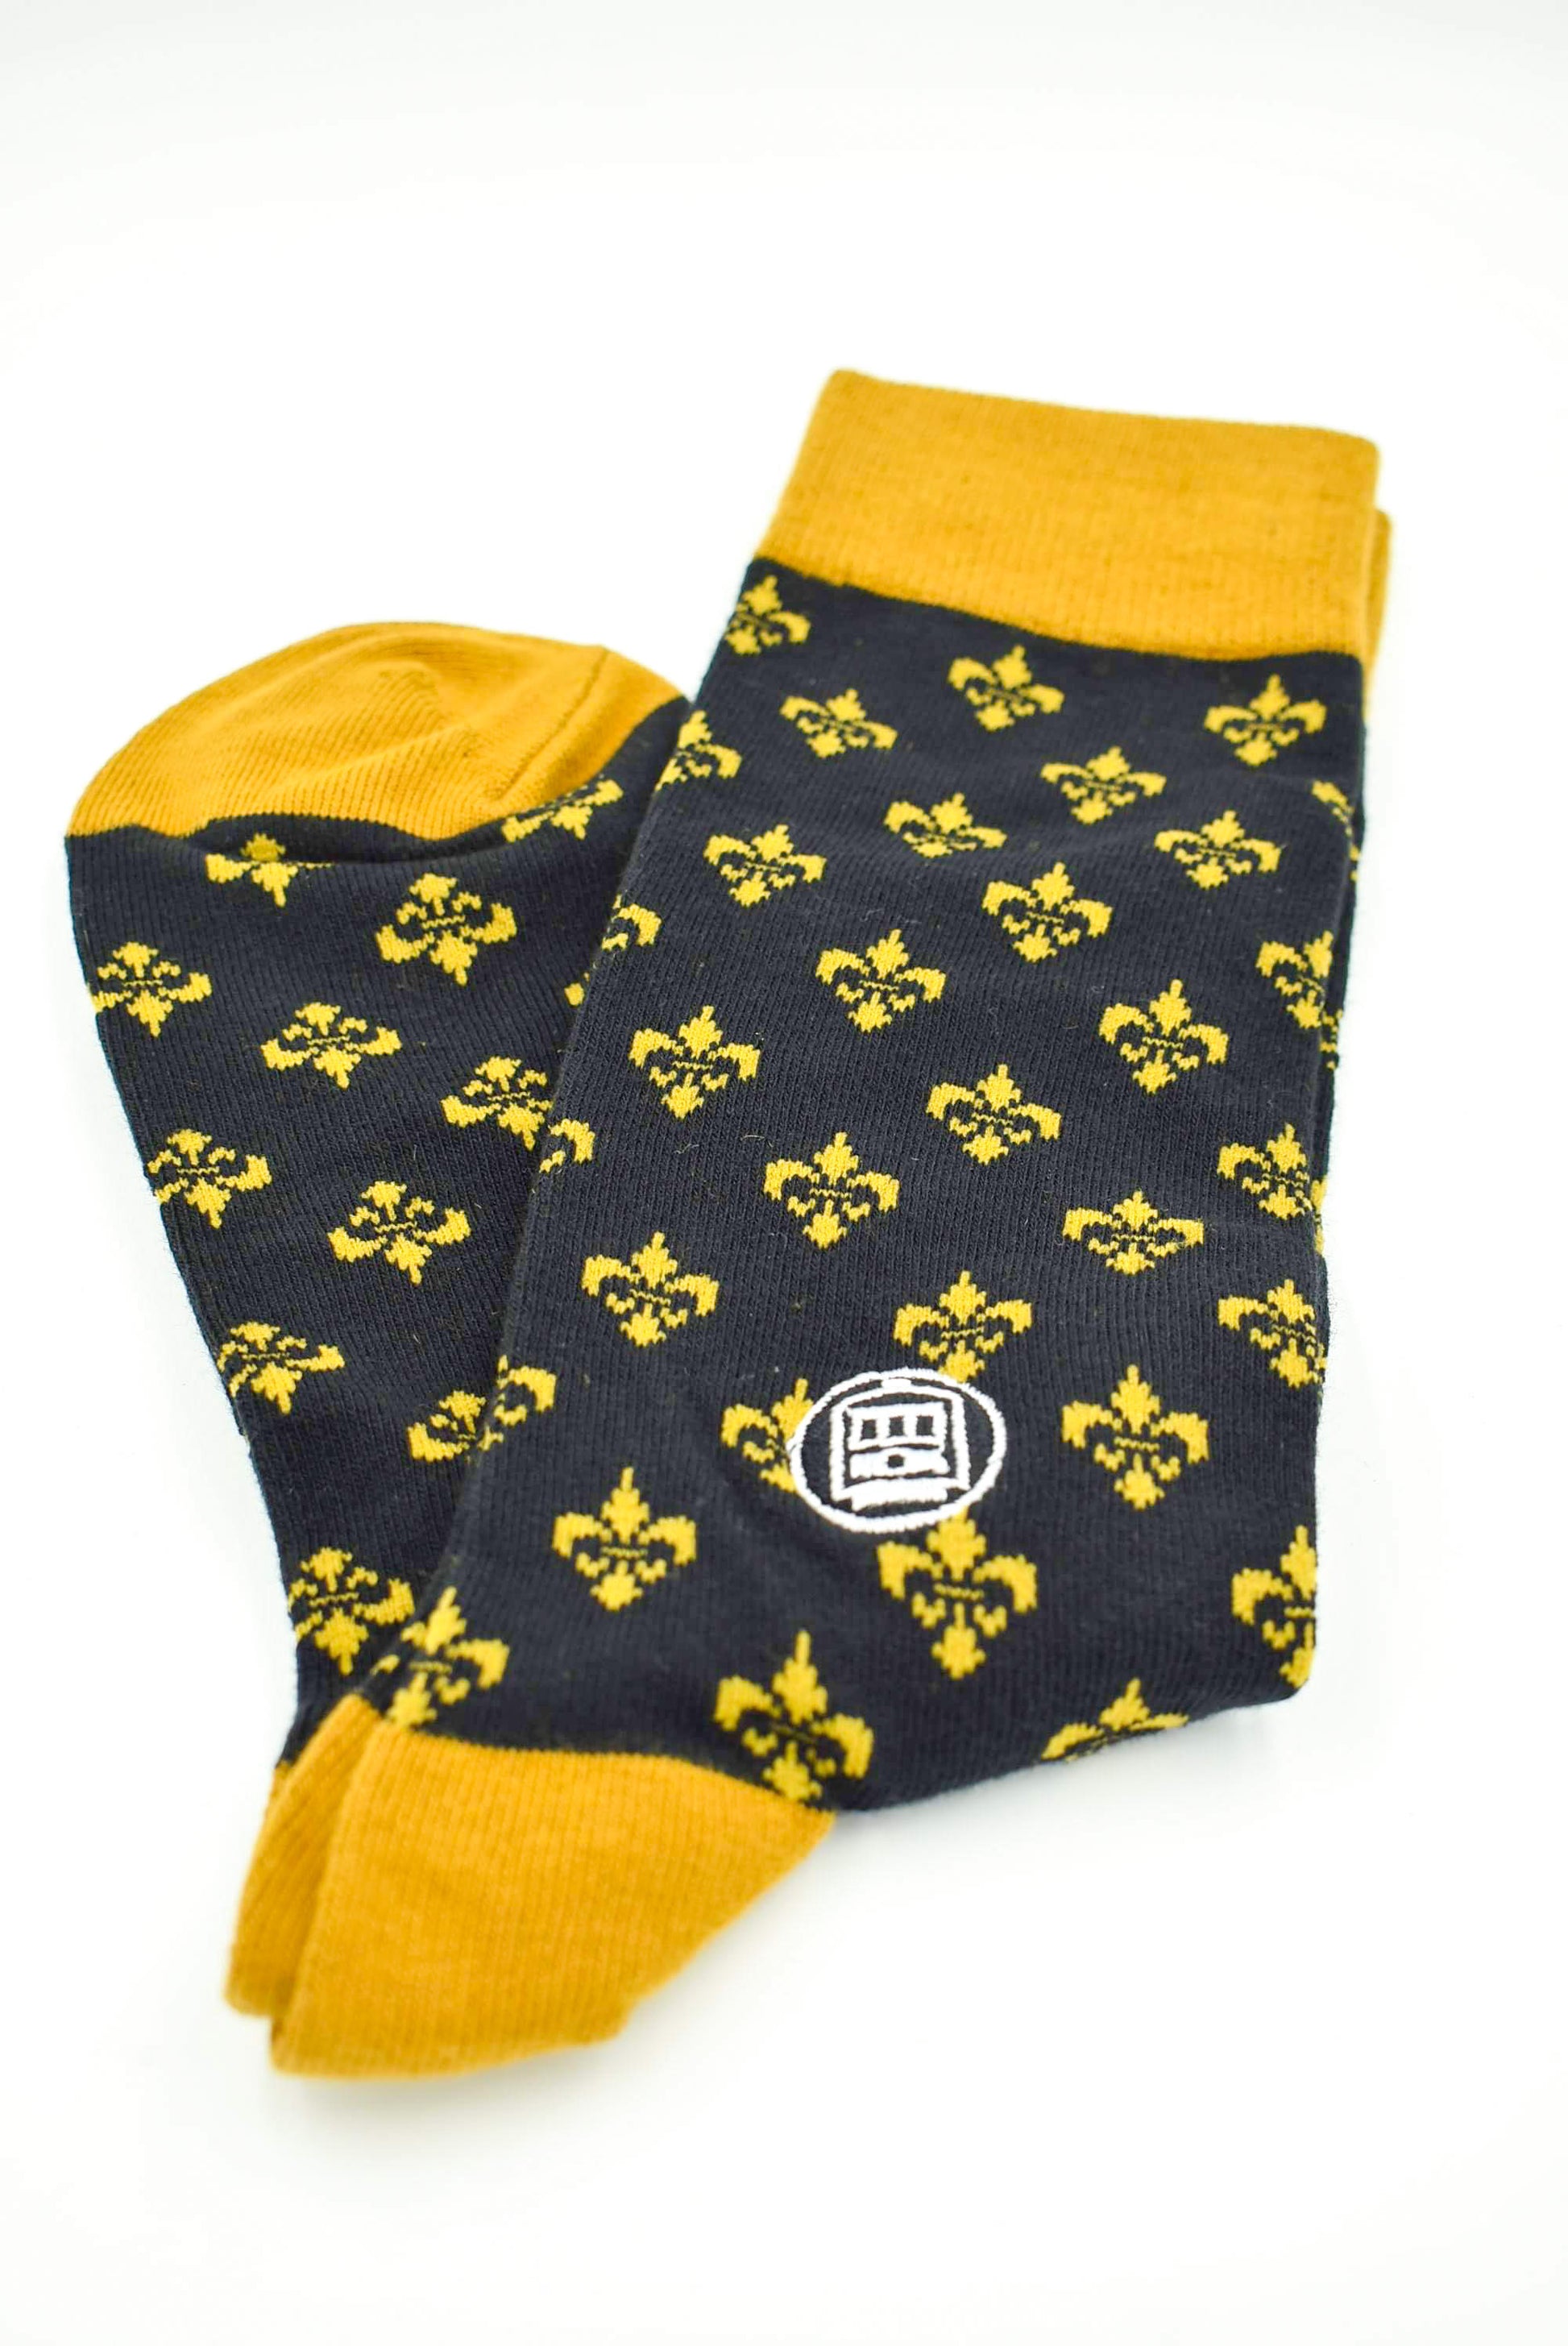 Black & Gold Socks Fleur De Lis Design Unisex Made in New Orleans